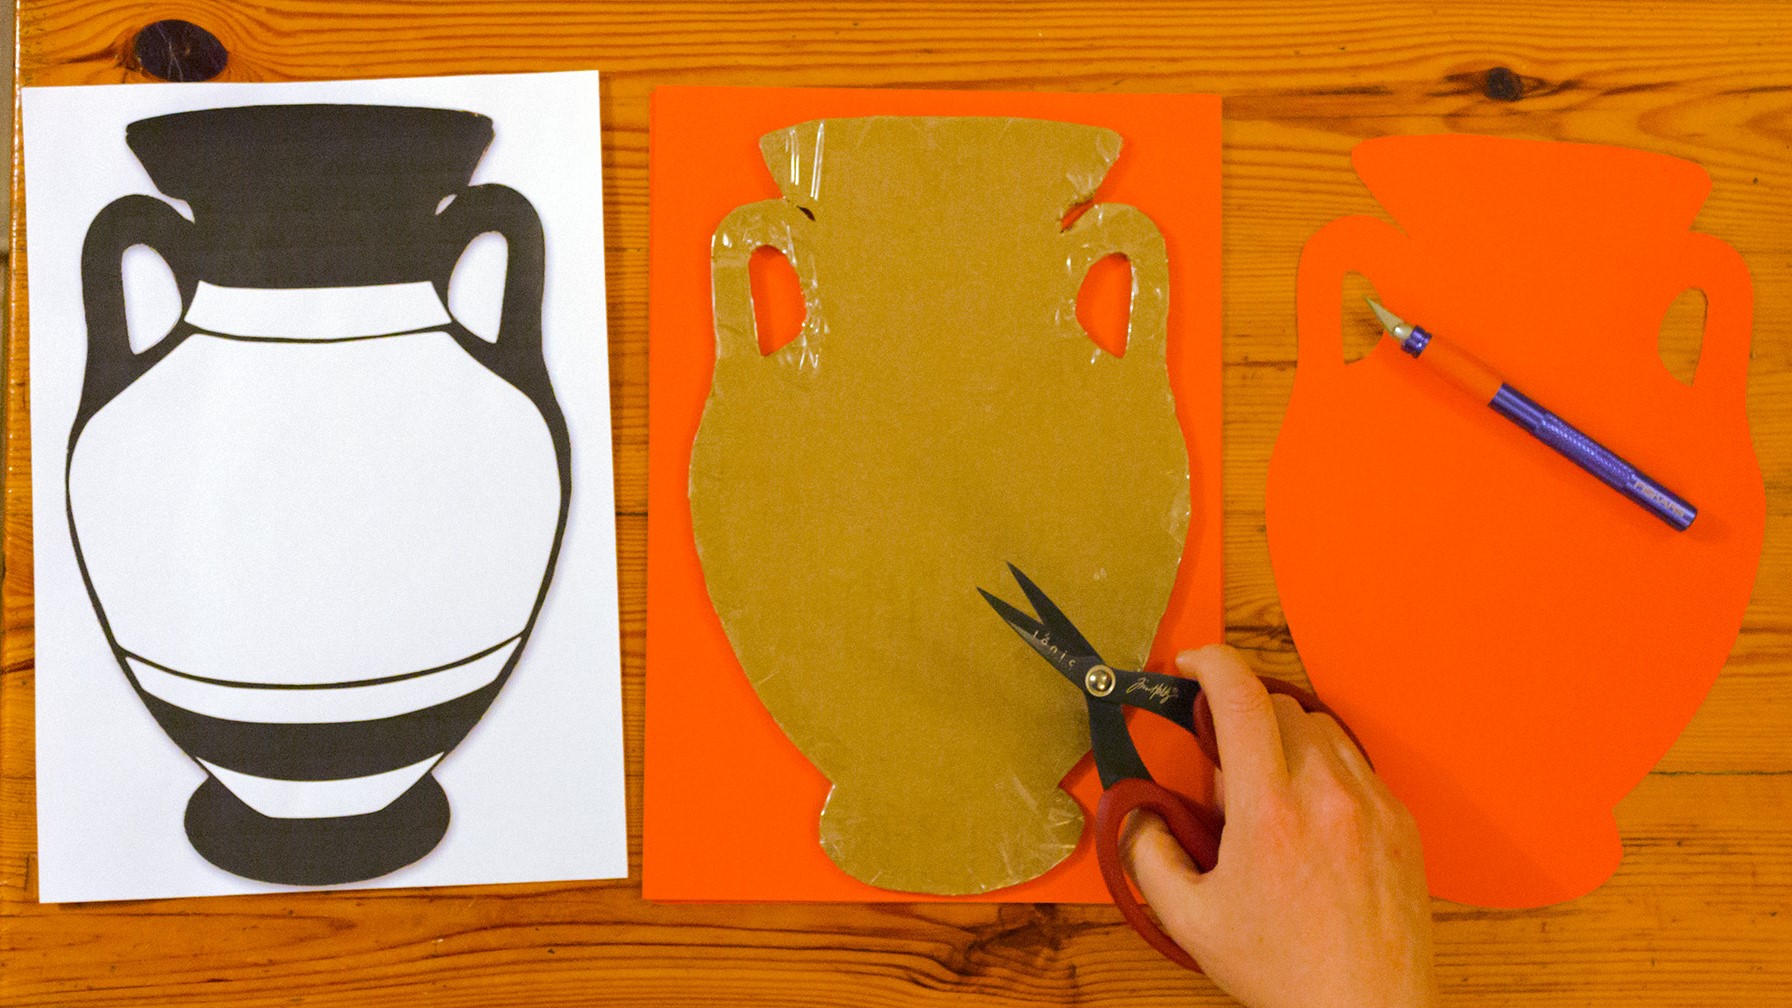 Greek vase shapes cut from orange card